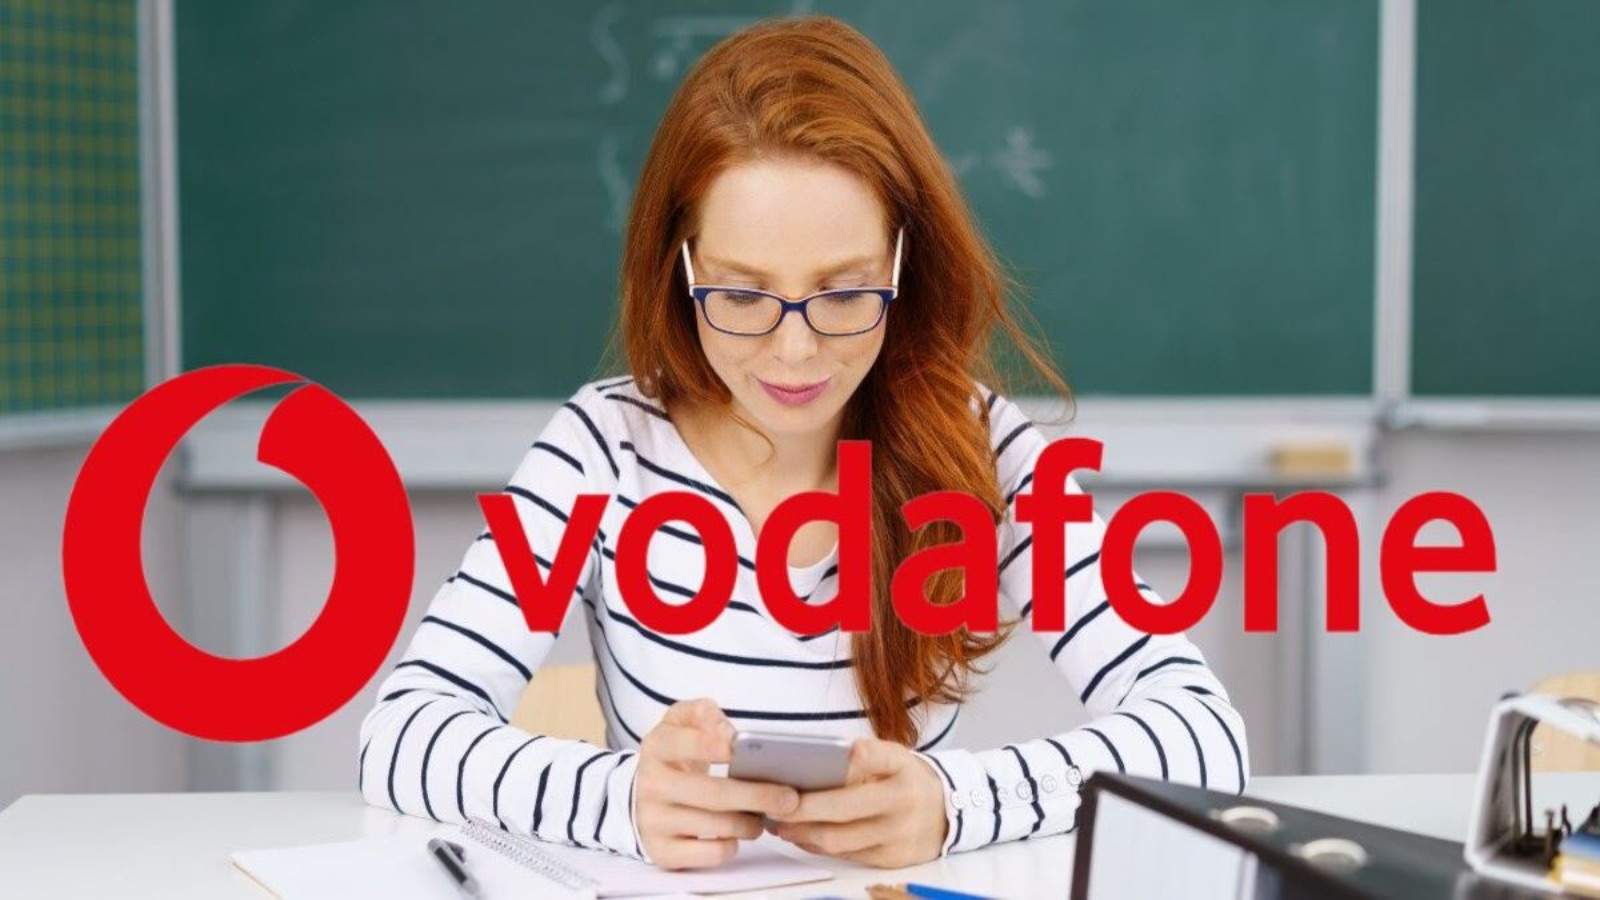 Vodafone Silver, le due offerte da 6 e 7 EURO al mese